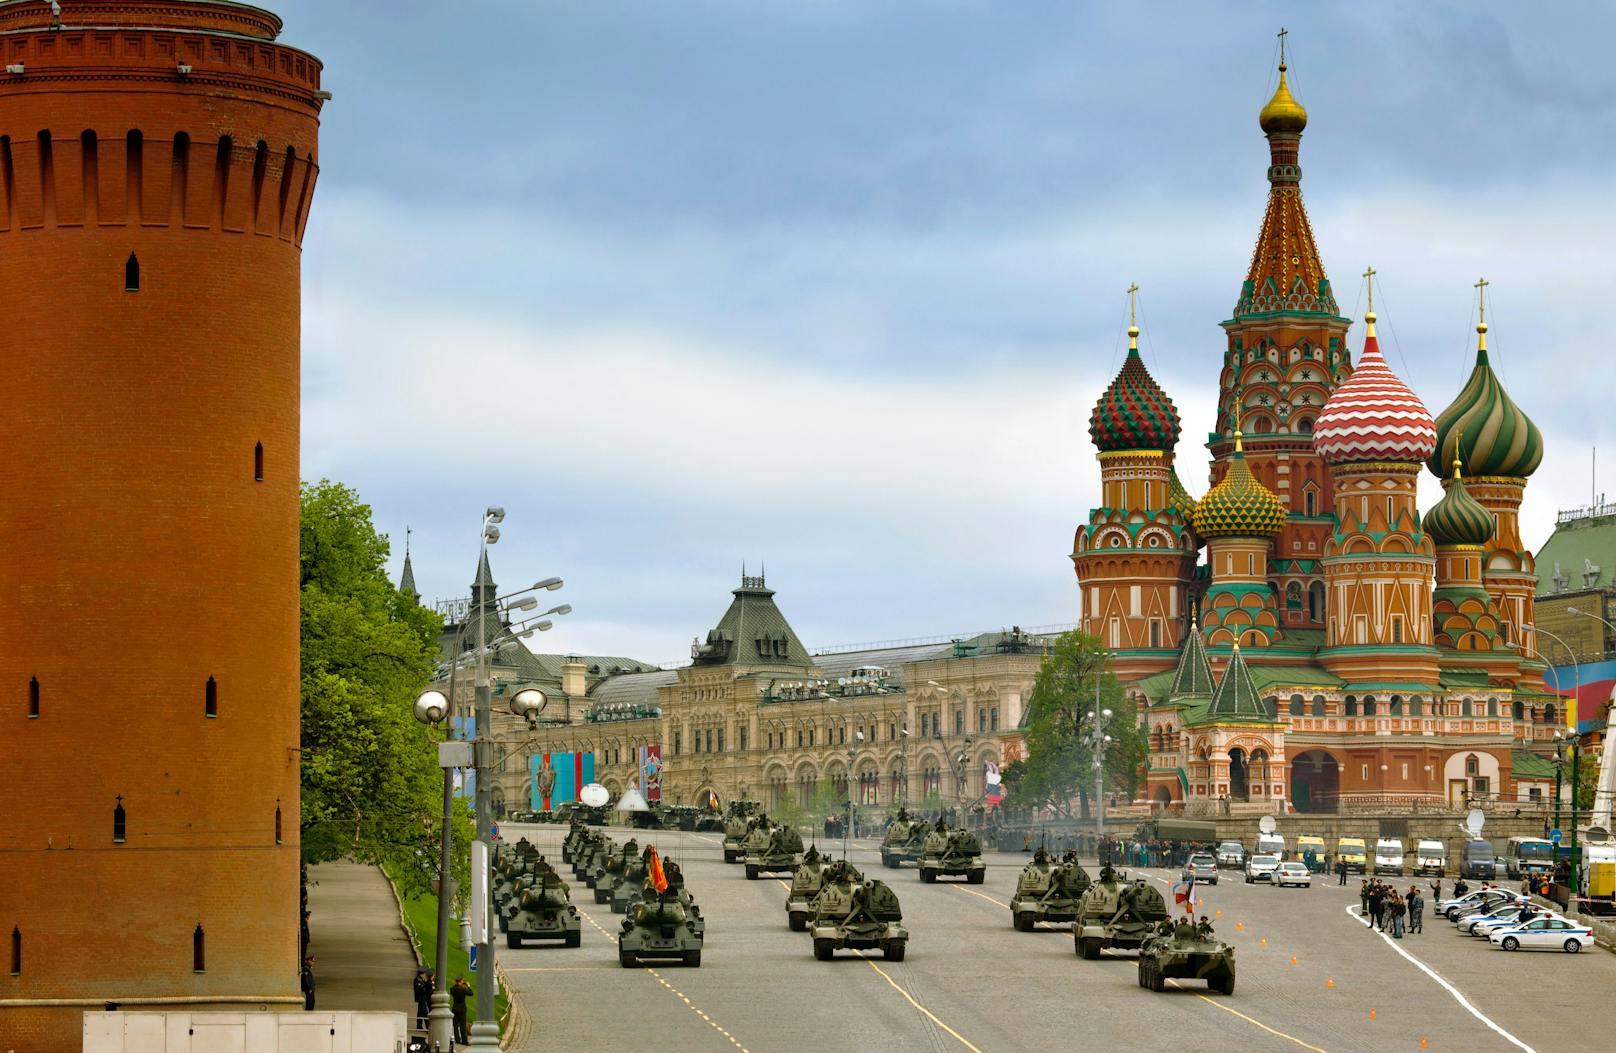 Traditionell finden in Russland am 9.Mai Militärparaden anlässlich des Jahrestages des Sieges über Nazi-Deutschland statt. In einigen Teilen Russlands wurden diese aber nun abgesagt. 